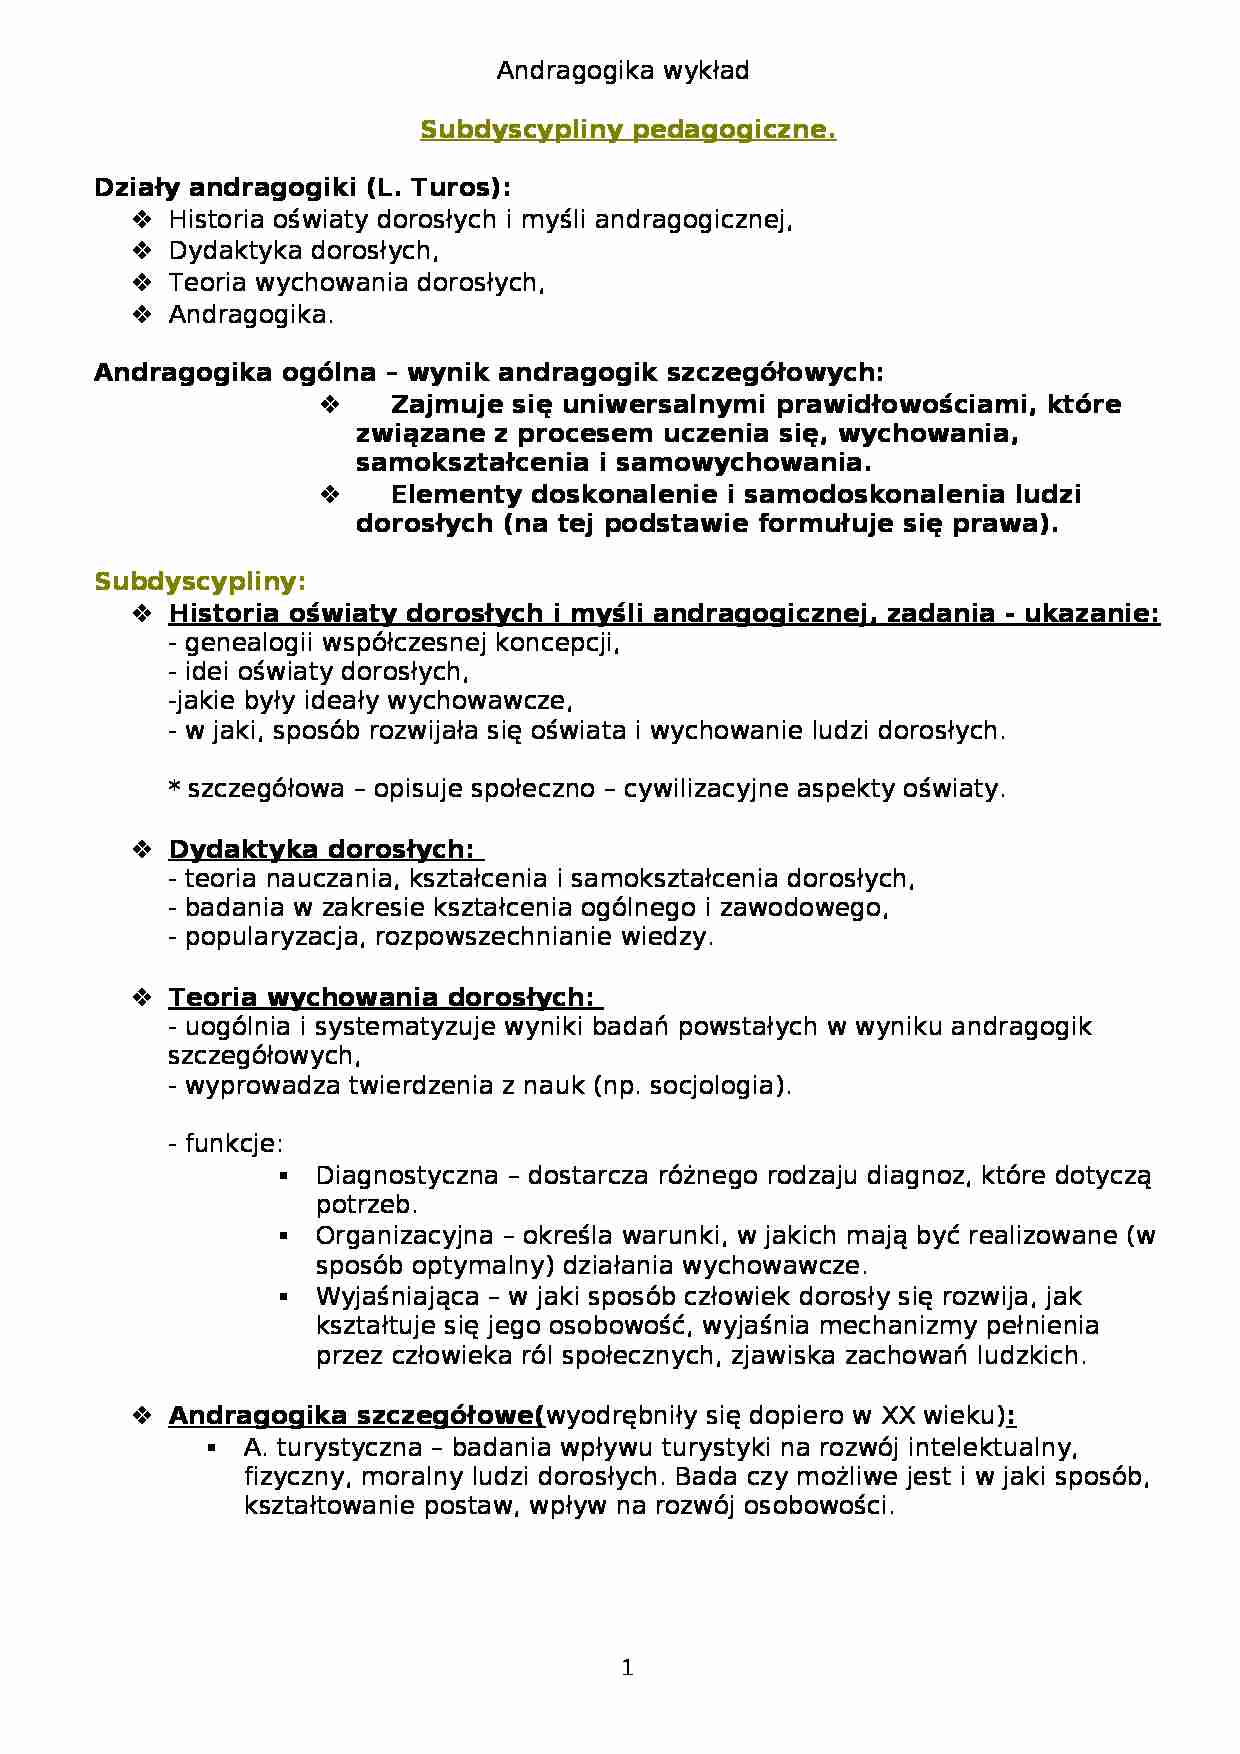 Andragogika- Subdyscypliny pedagogiczne. - strona 1